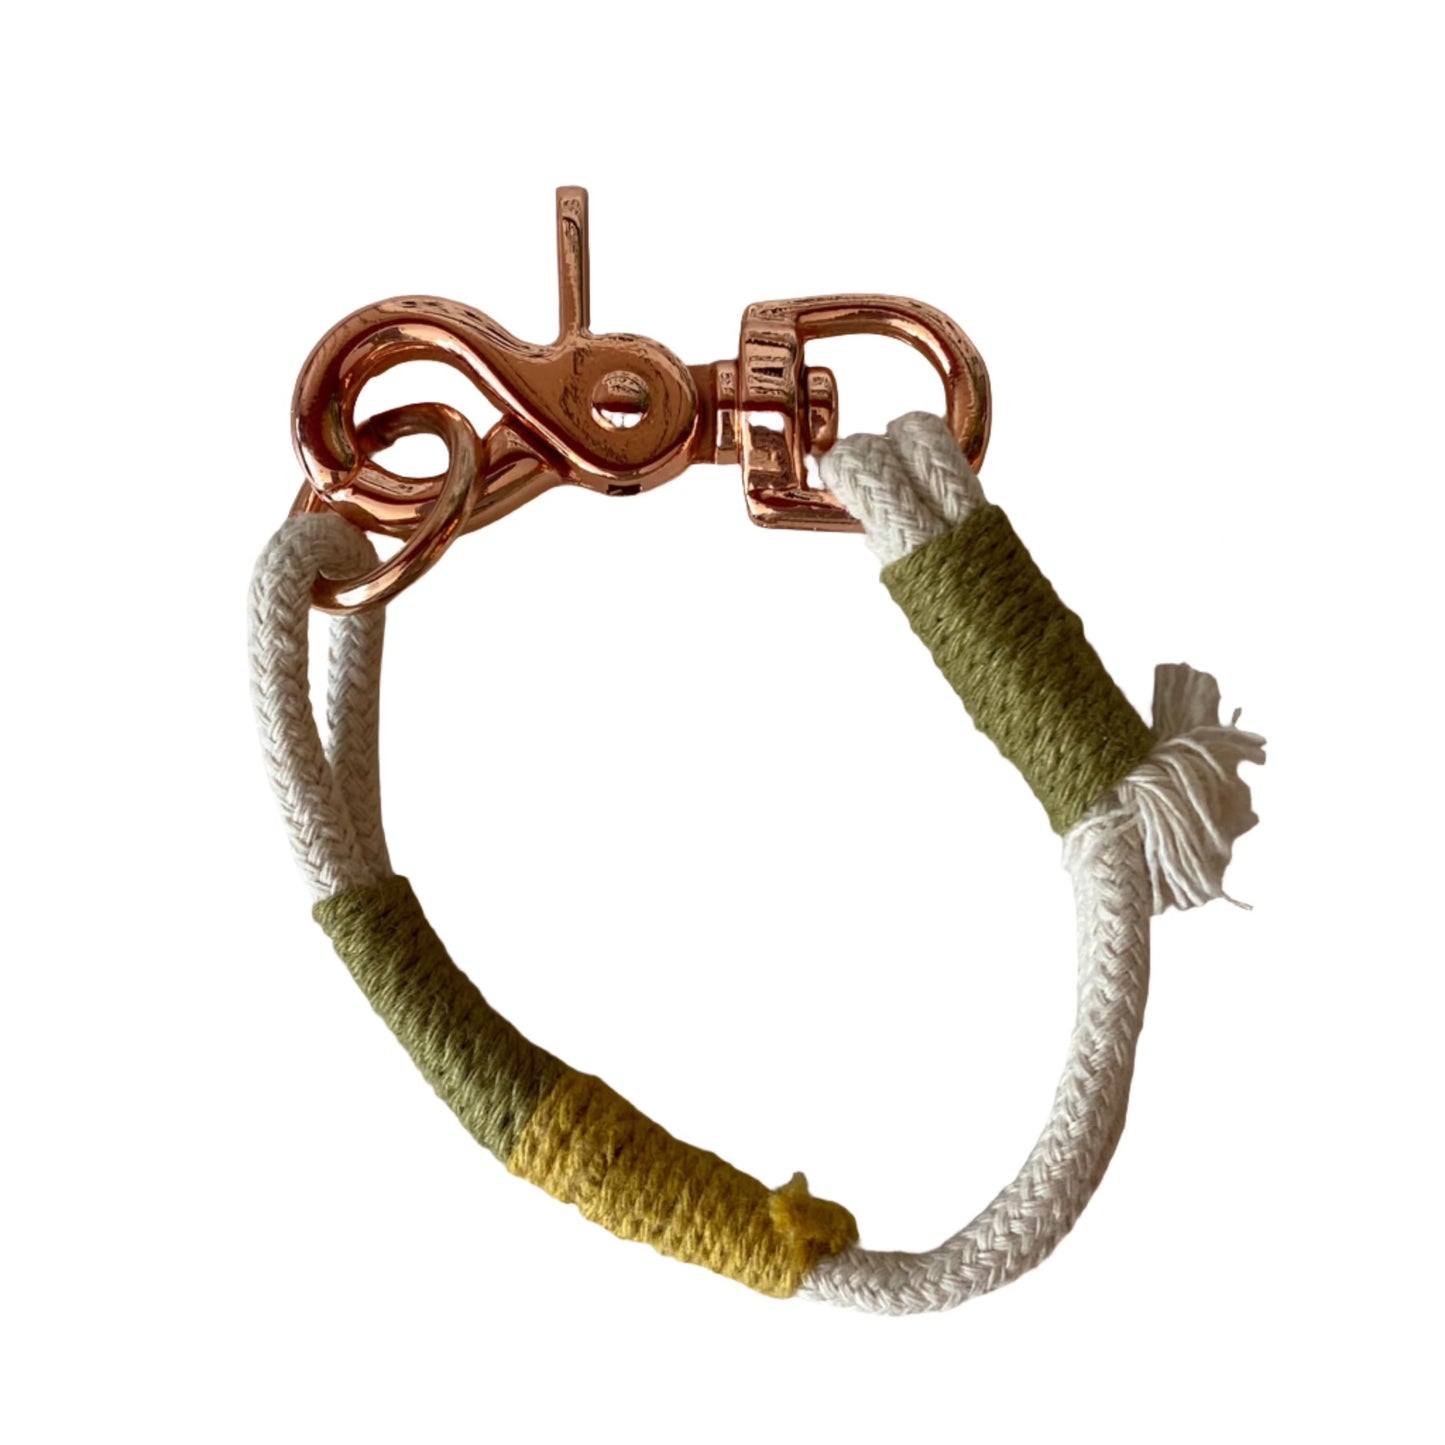 Handmade Cord Bracelet